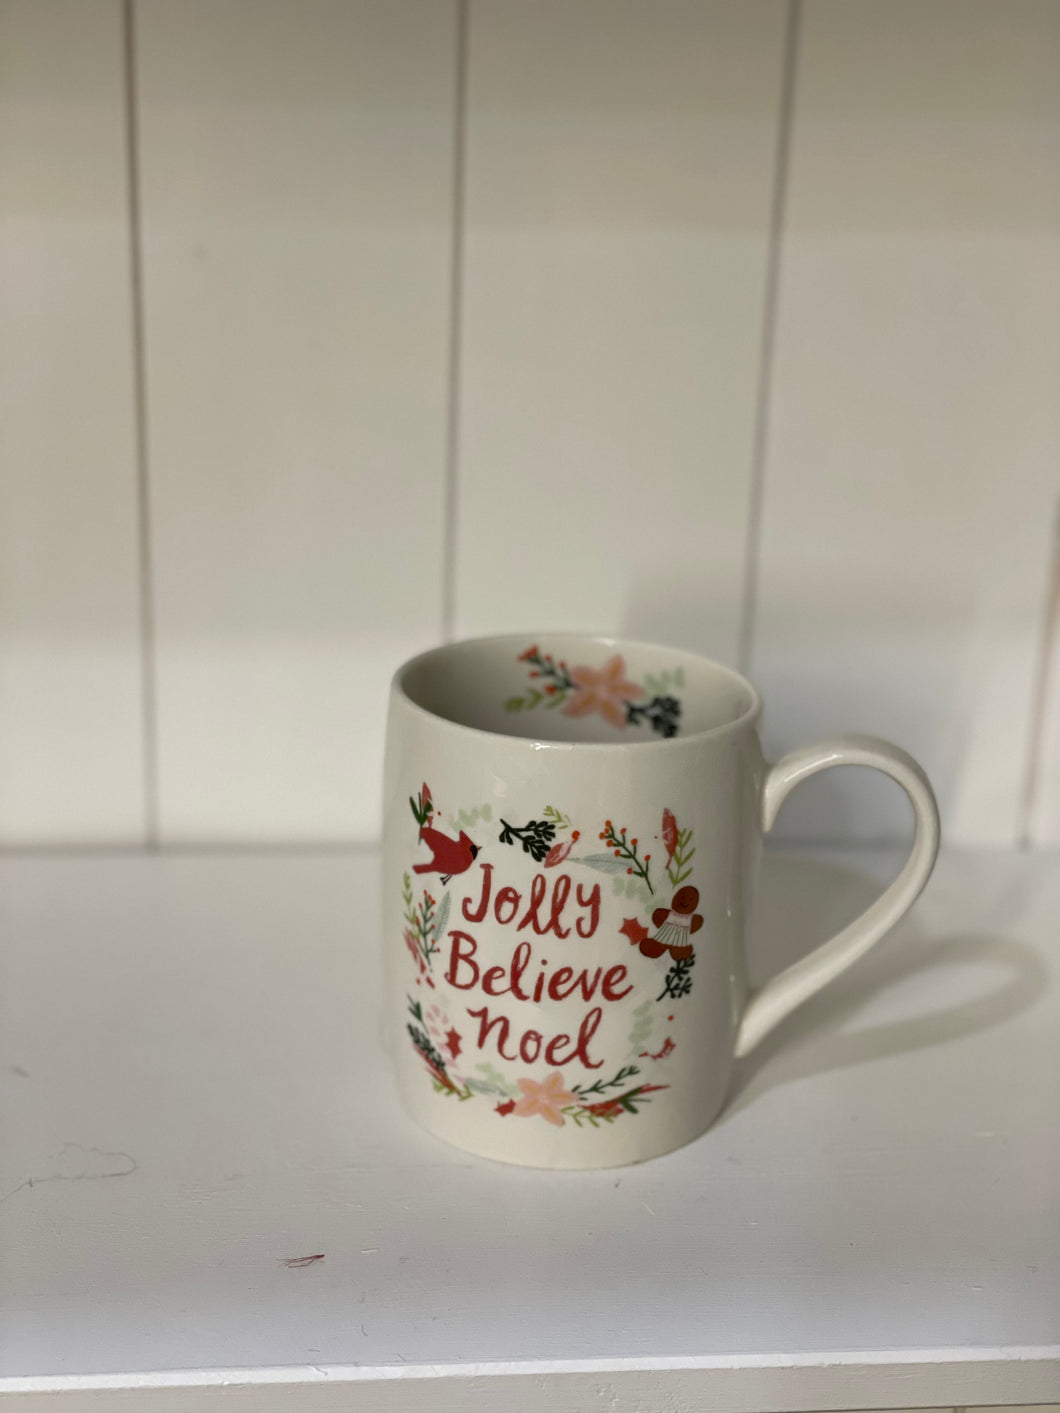 Jolly Believe Noel Mug